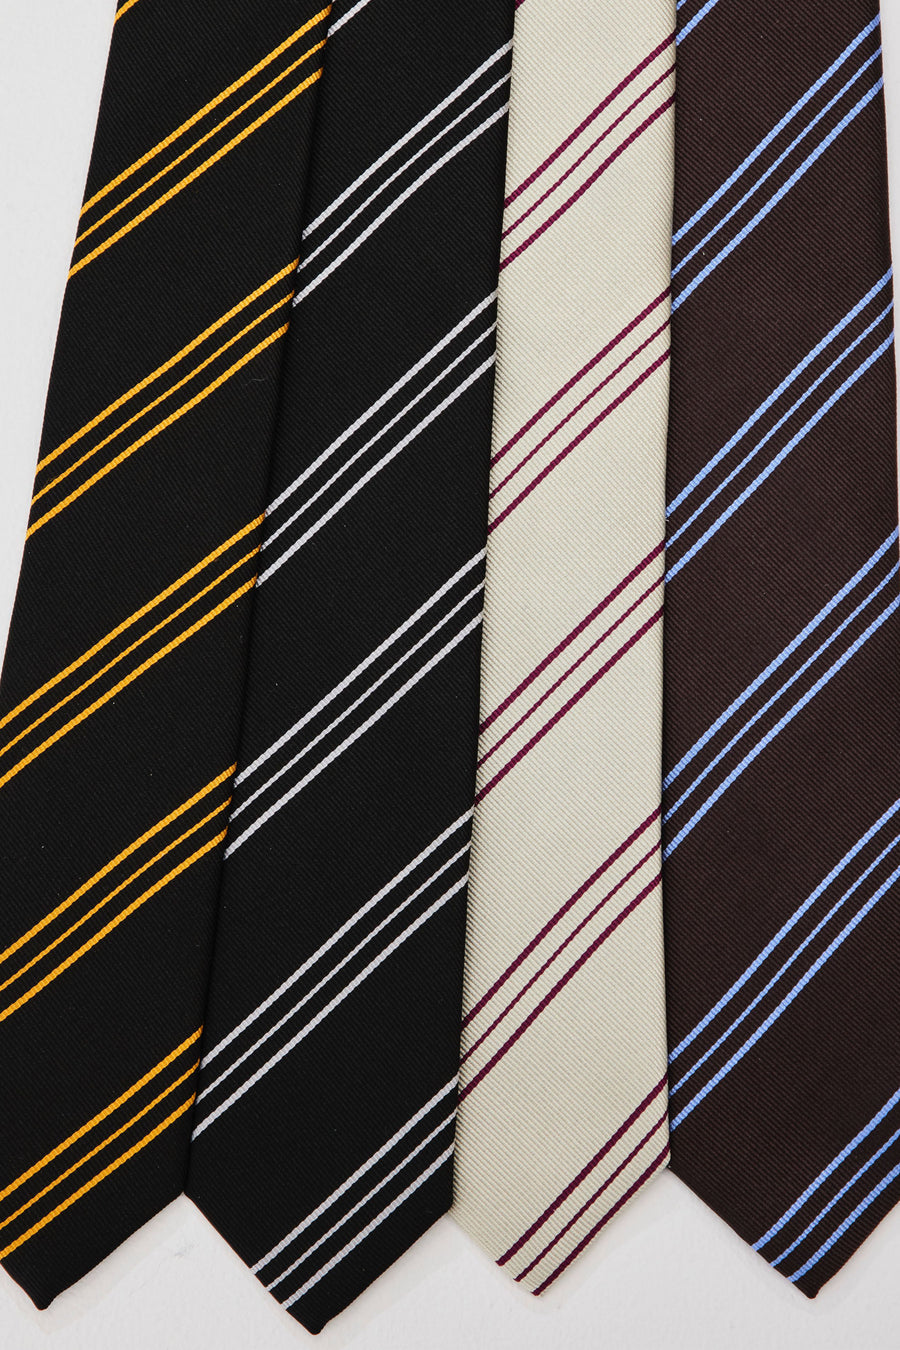 LITTLEBIG  Resimental Tie 2( Black/Orange or Brown/Blue )